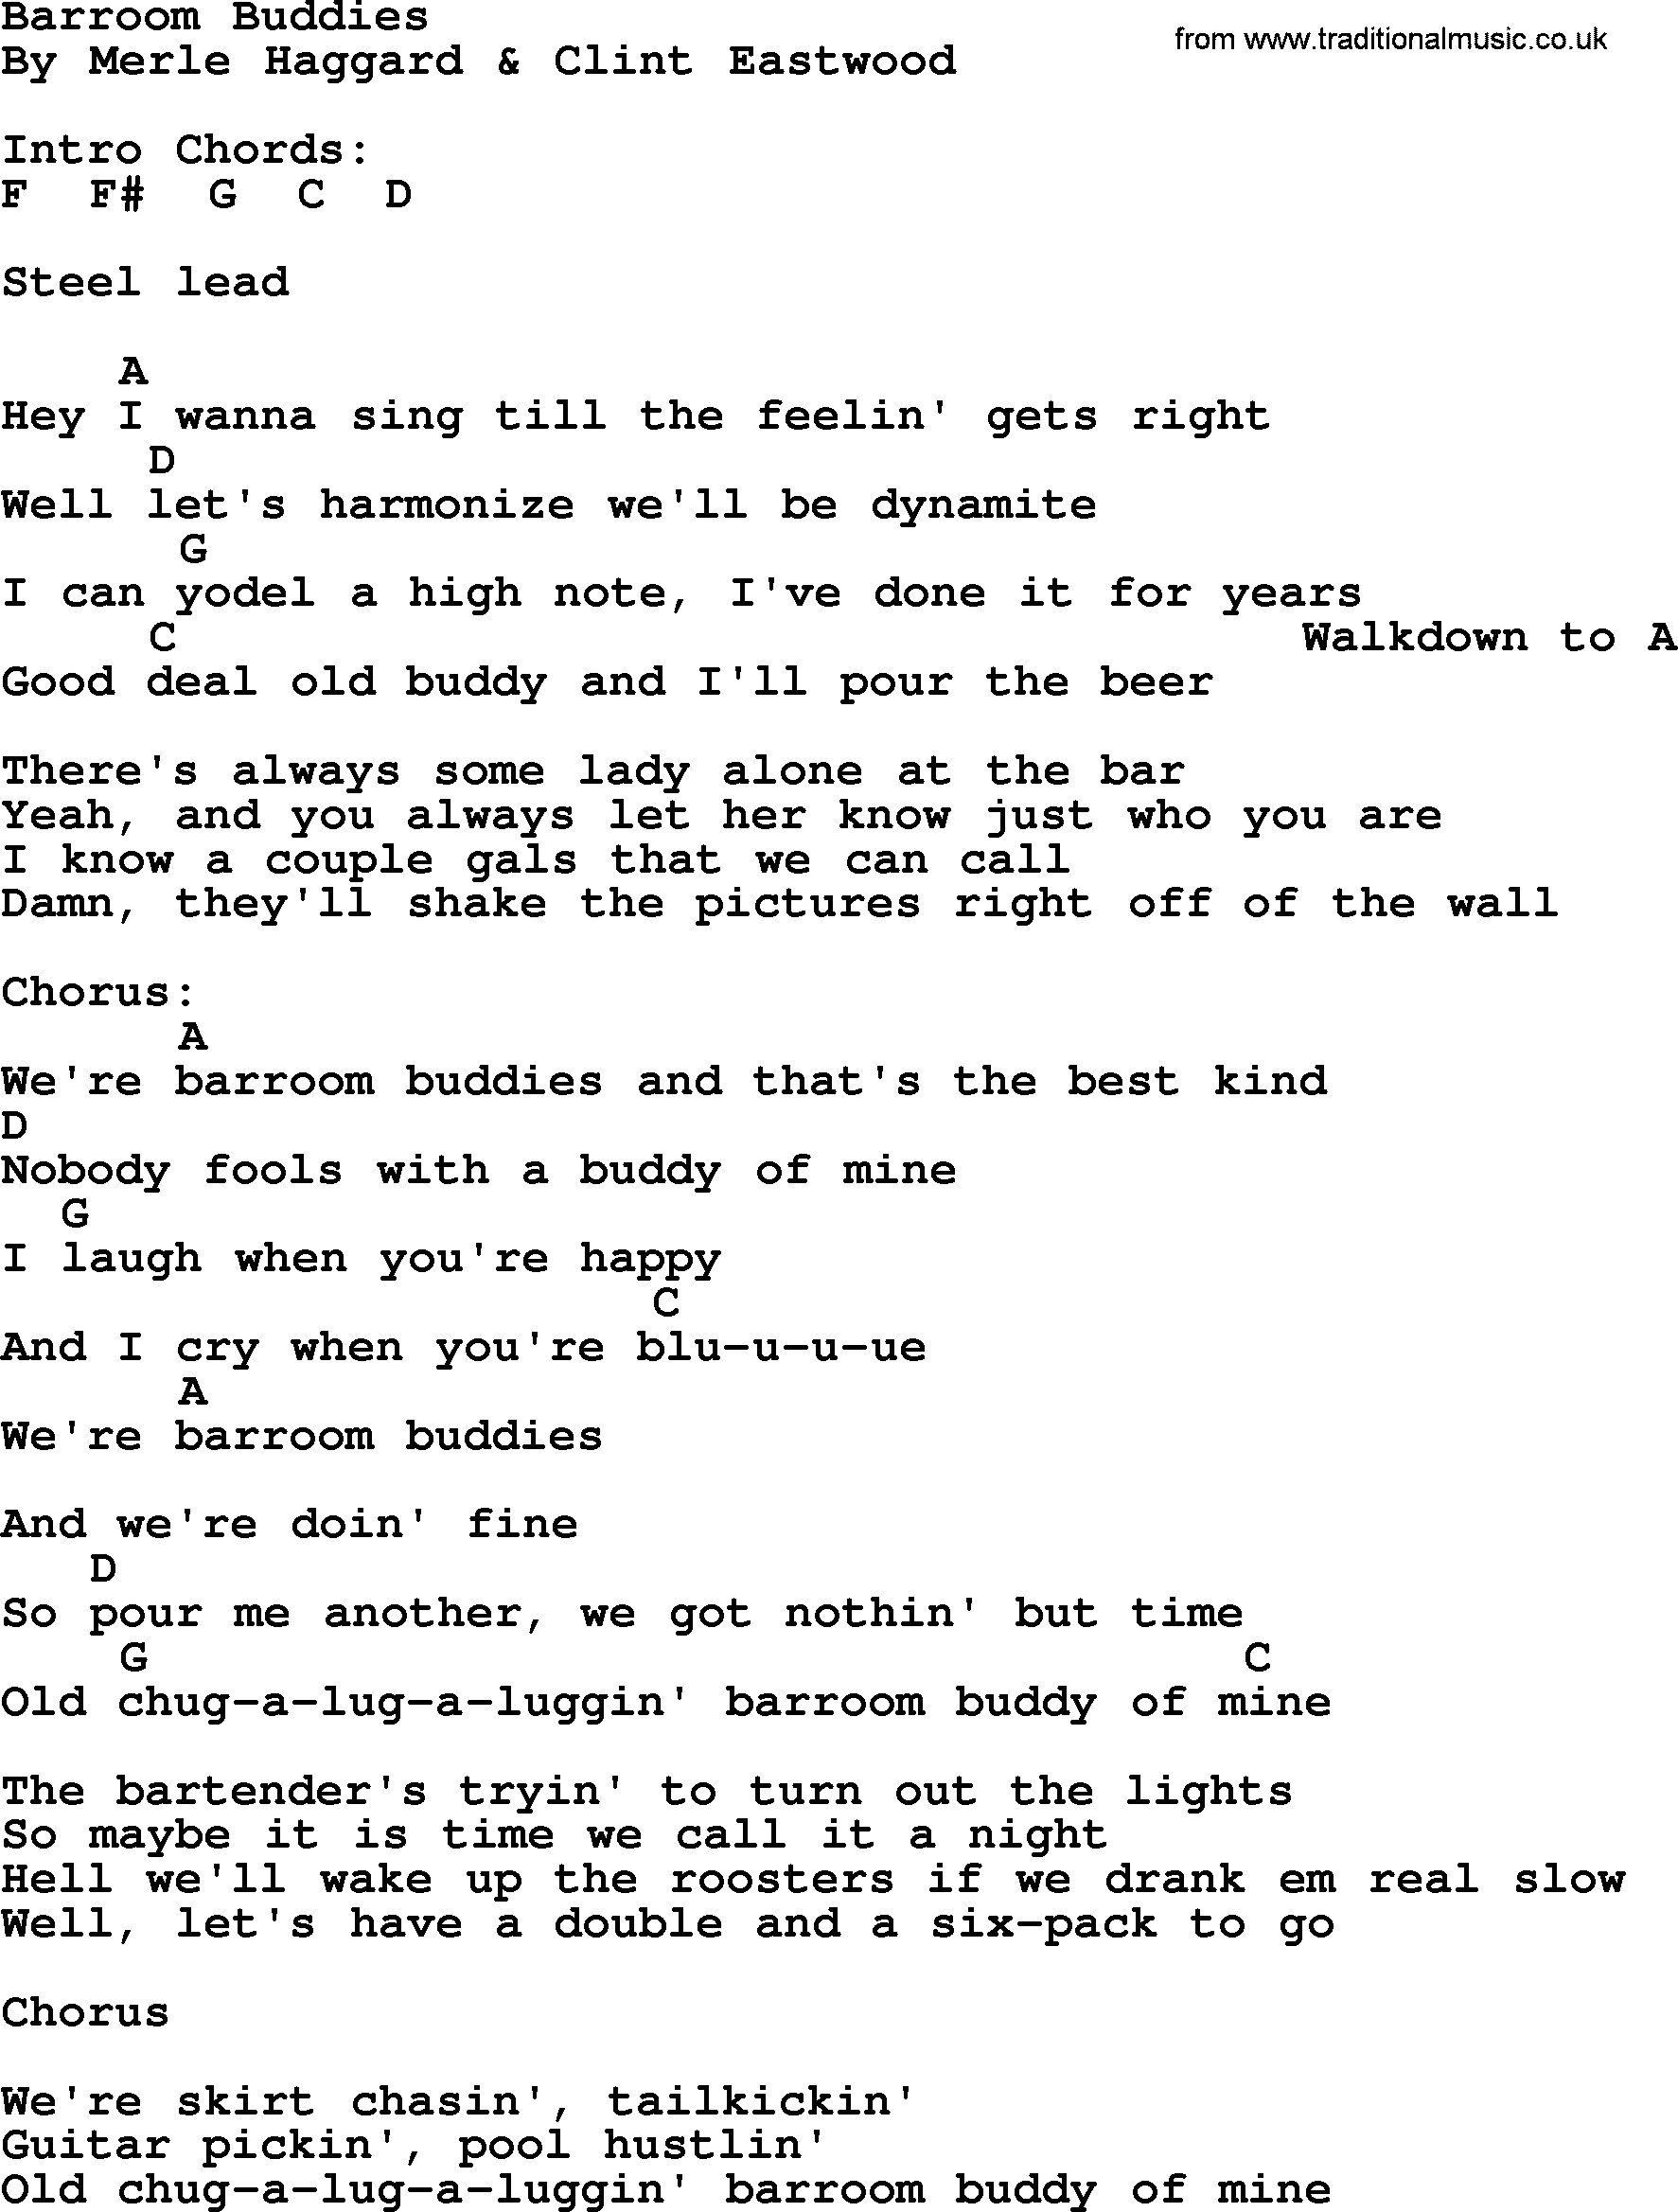 Merle Haggard song: Barroom Buddies, lyrics and chords